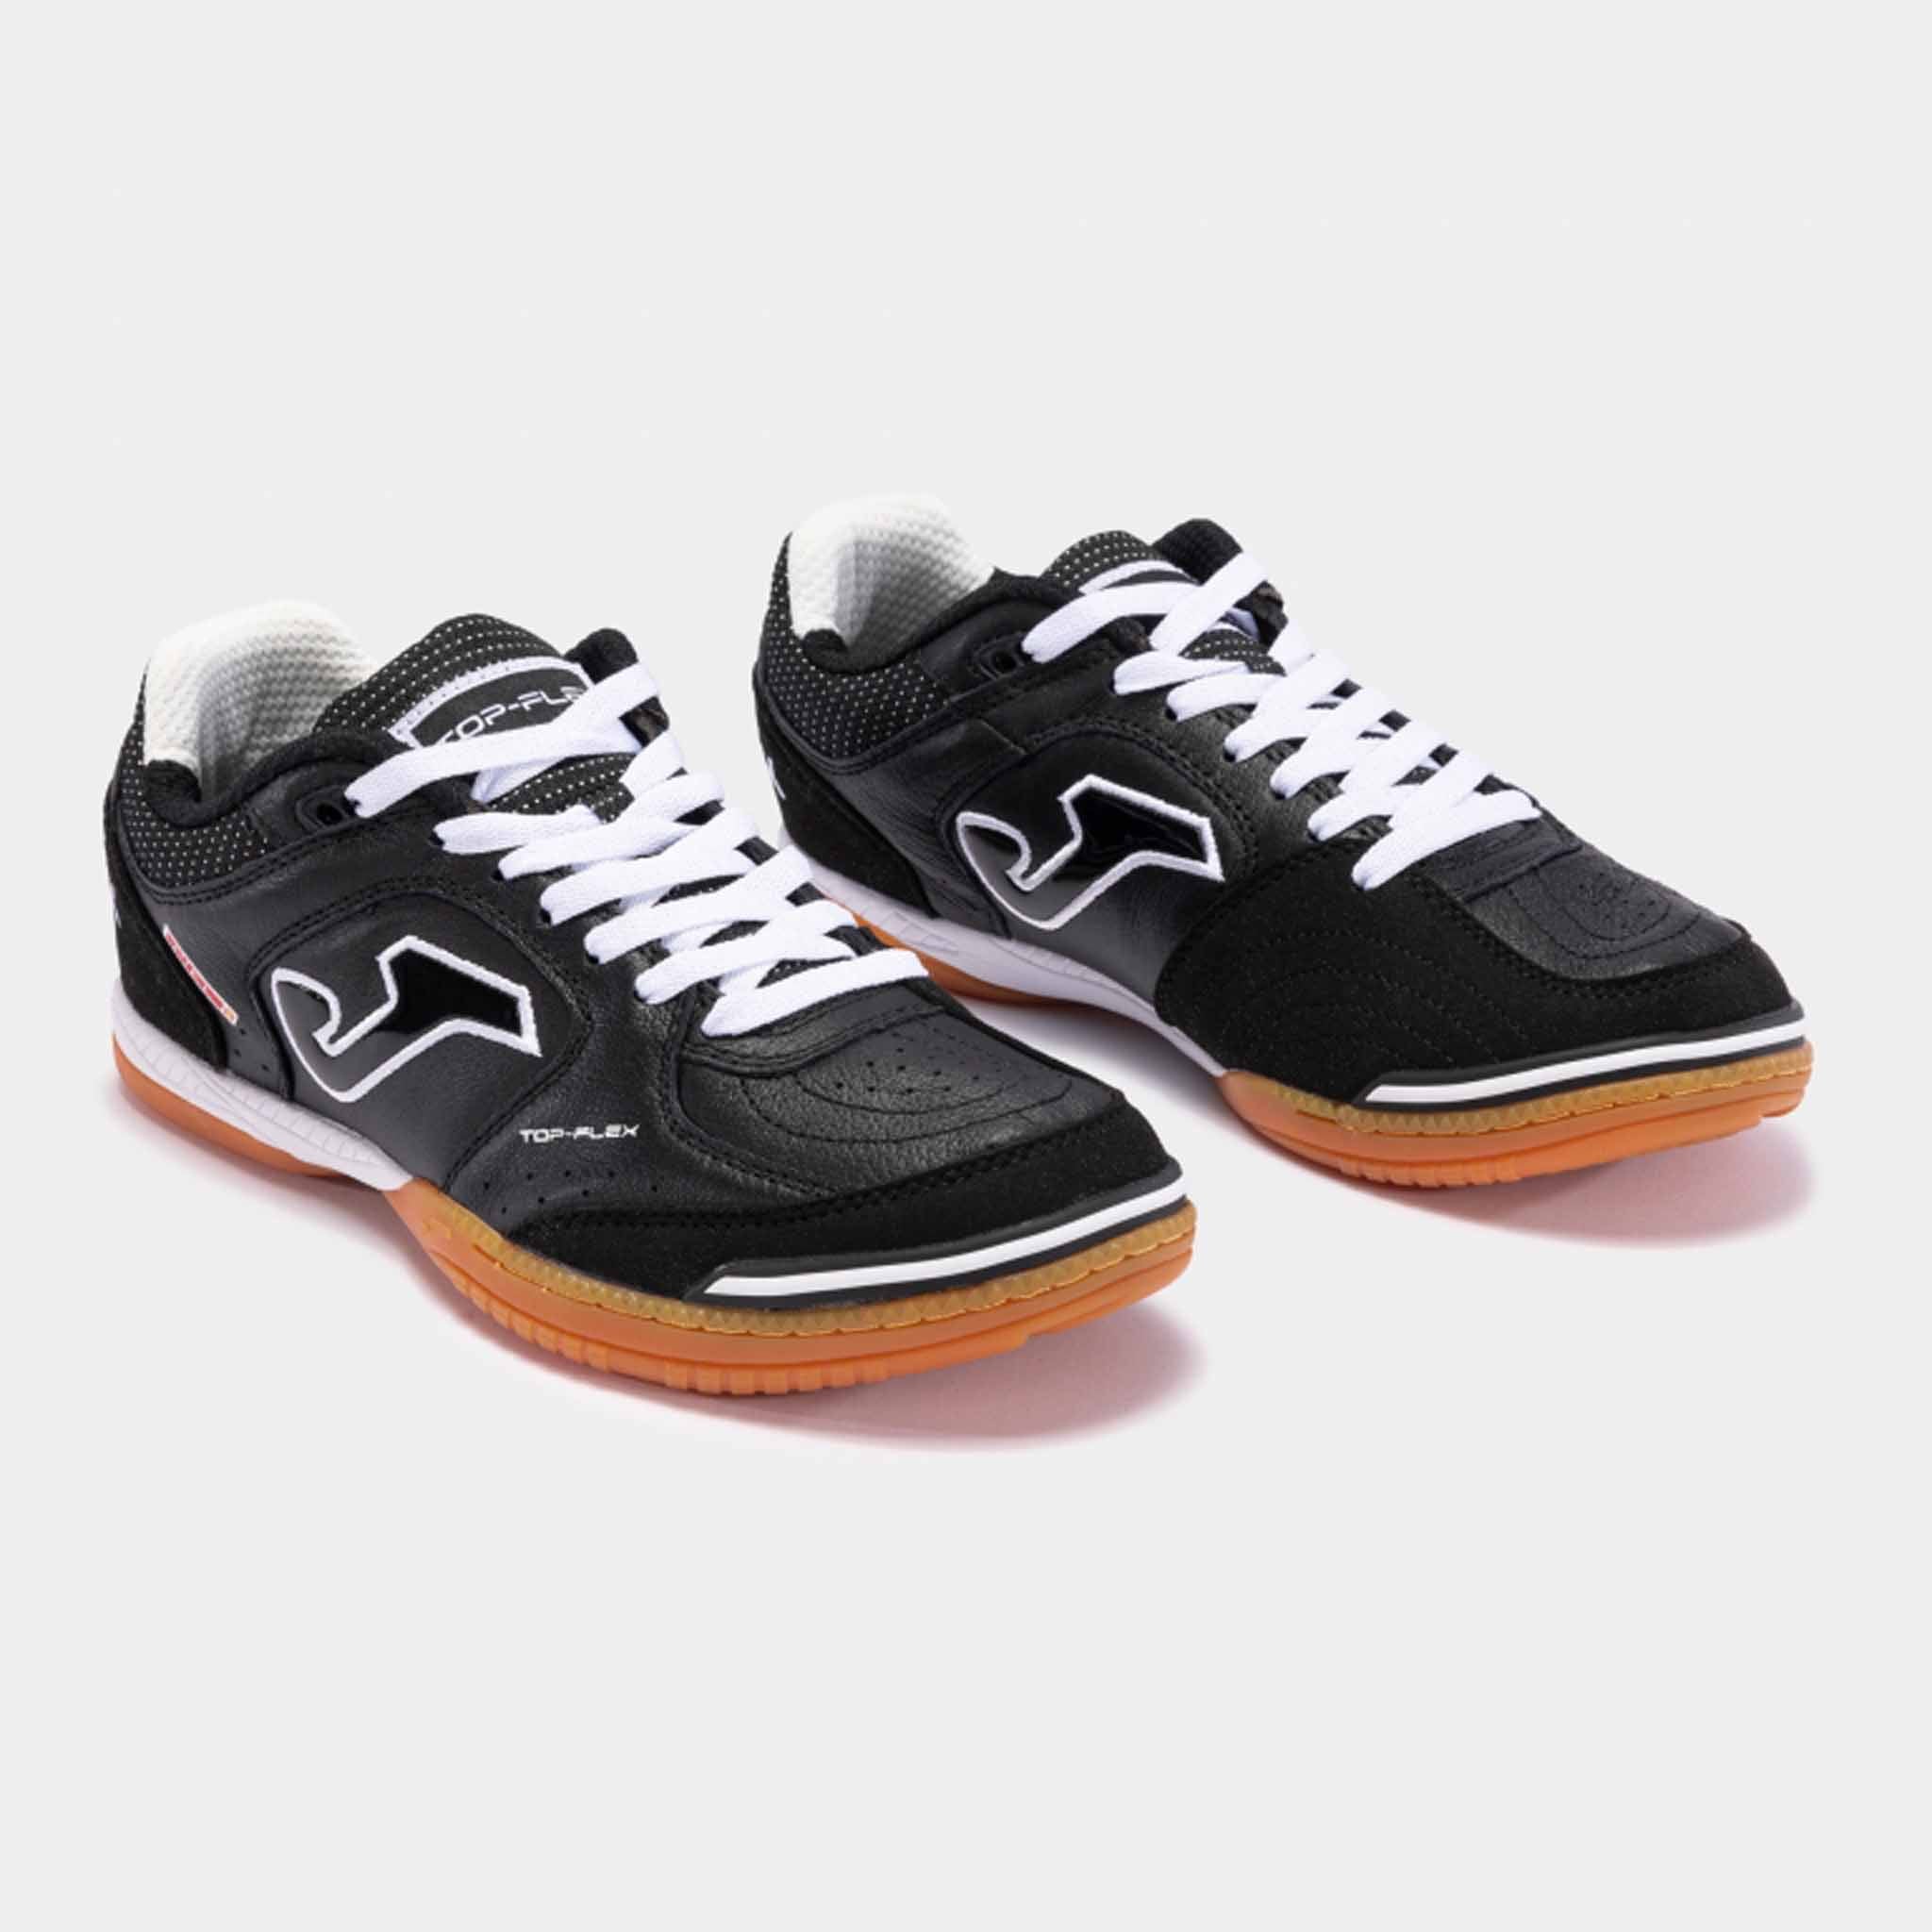 Chaussures futsal Top Flex 23 indoor noir